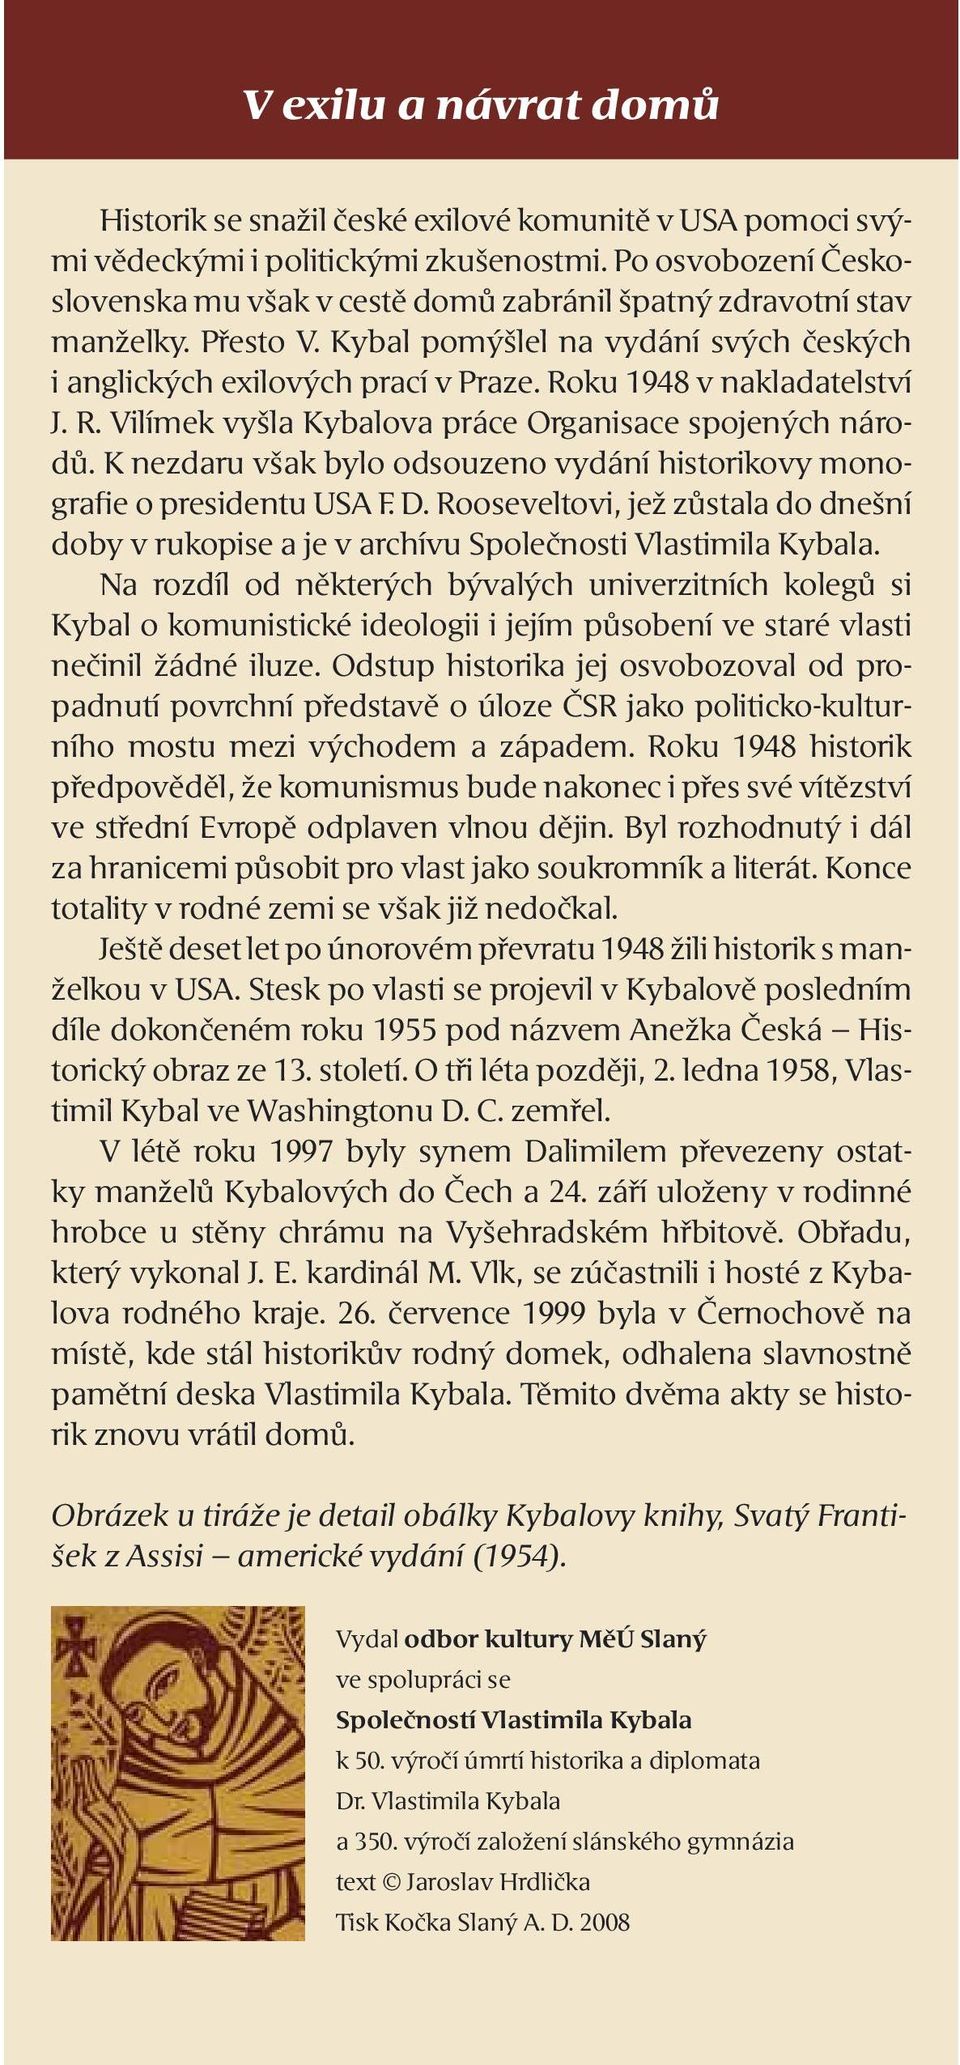 Roku 1948 v nakladatelství J. R. Vilímek vyšla Kybalova práce Organisace spojených národů. K nezdaru však bylo odsouzeno vydání historikovy monografie o presidentu USA F. D.